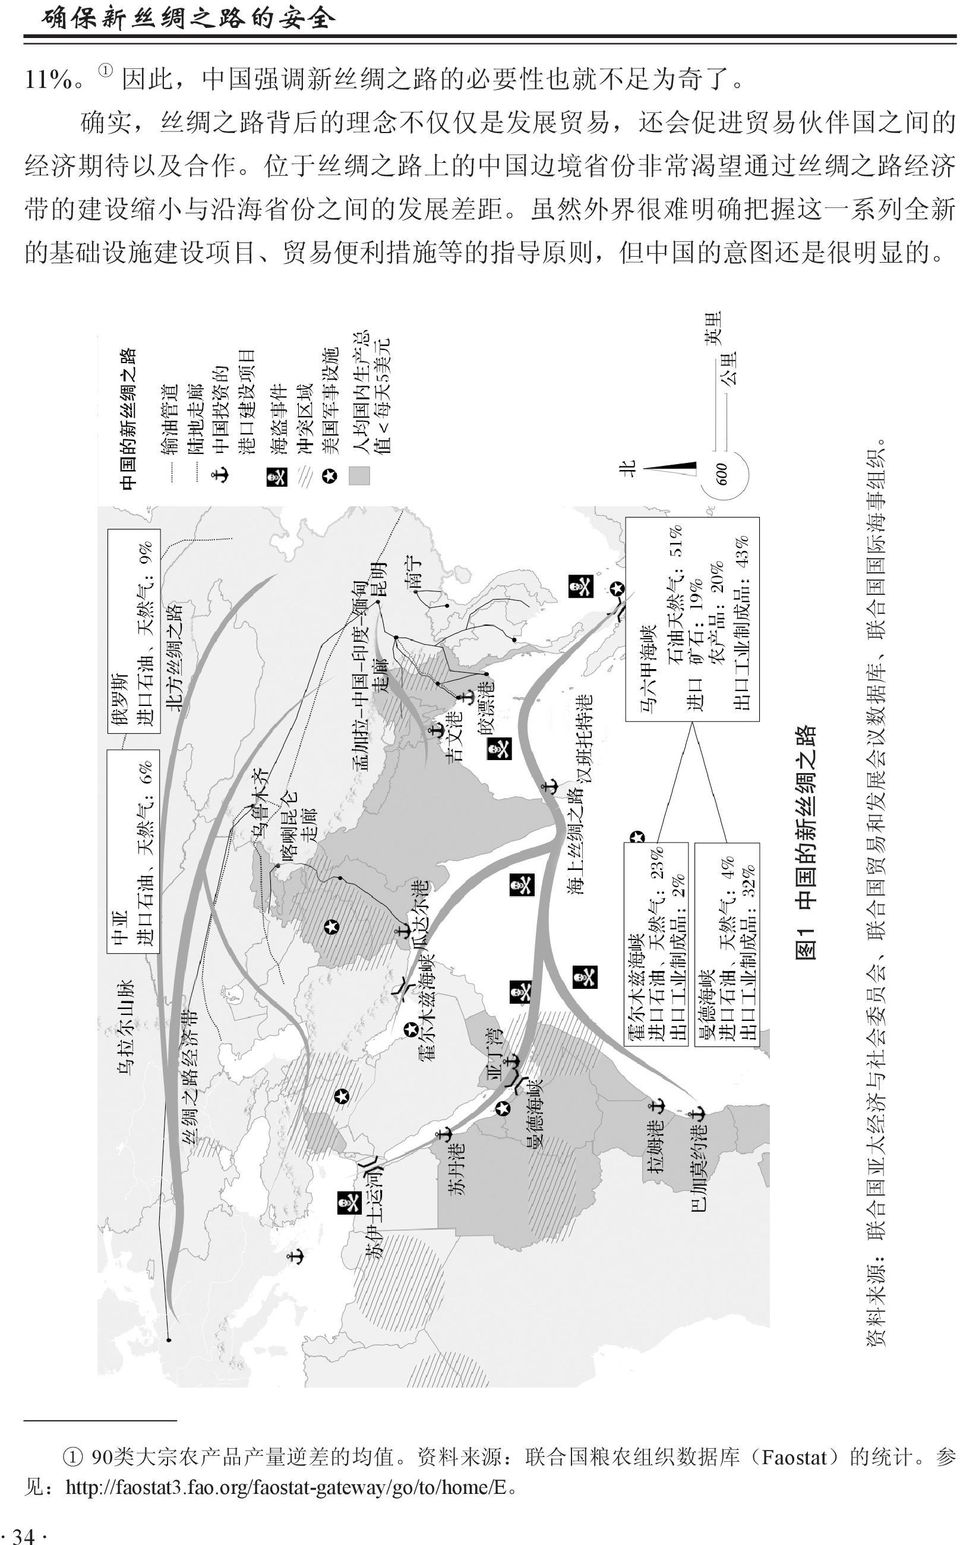 目 贸 易 便 利 措 施 等 的 指 导 原 则, 但 中 国 的 意 图 还 是 很 明 显 的 图 1 中 国 的 新 丝 绸 之 路 资 料 来 源 : 联 合 国 亚 太 经 济 与 社 会 委 员 会 联 合 国 贸 易 和 发 展 会 议 数 据 库 联 合 国 国 际